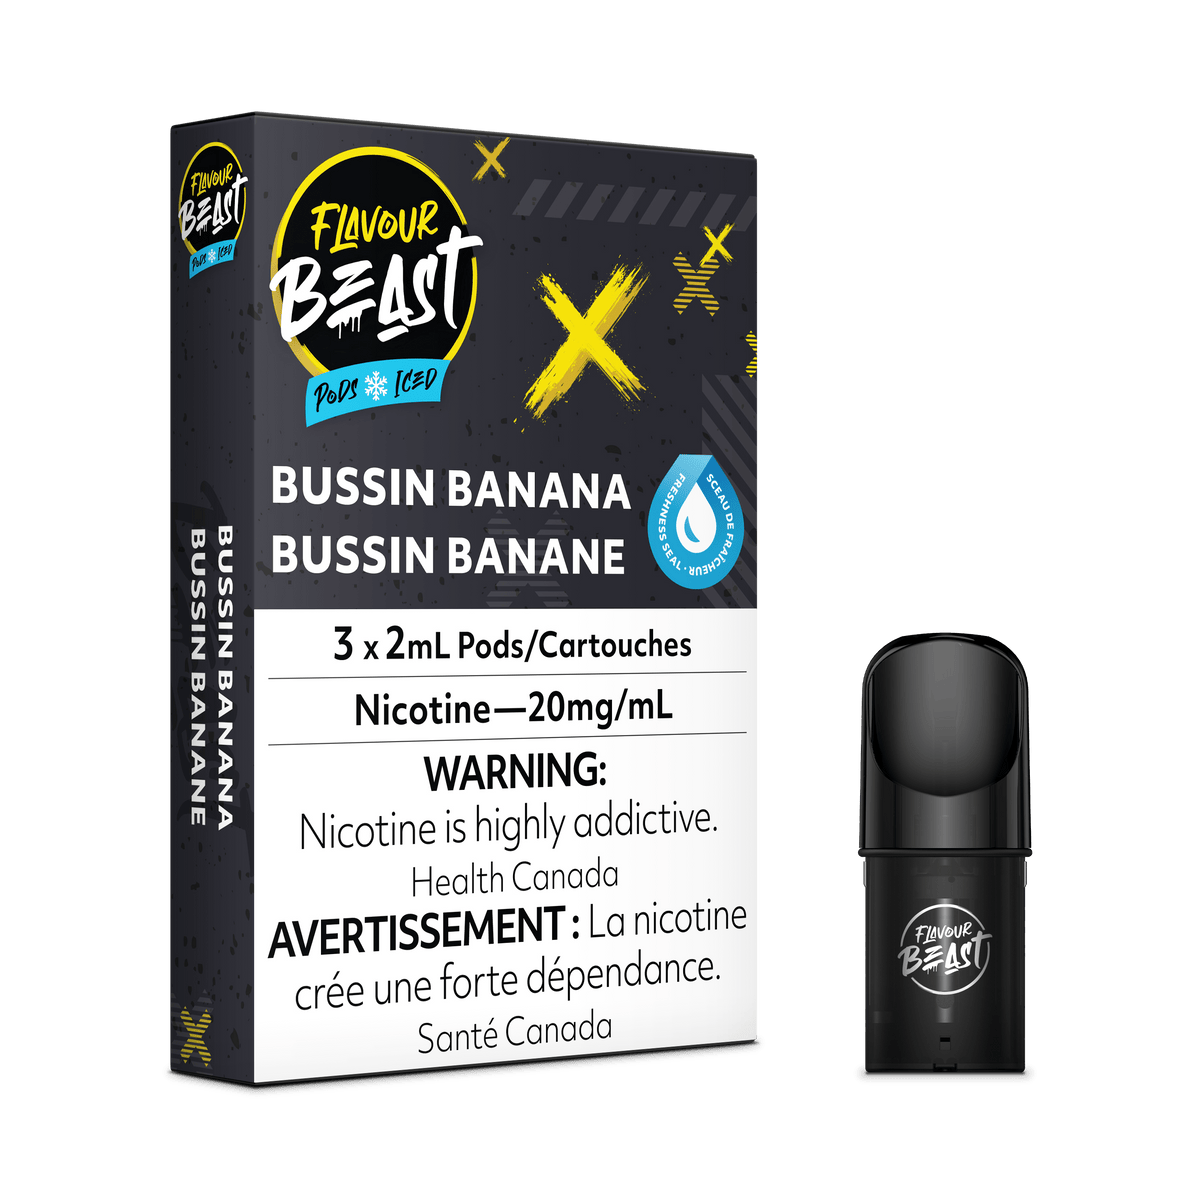 Flavour Beast Vape Pod - Bussin Banana Iced available on Canada online vape shop